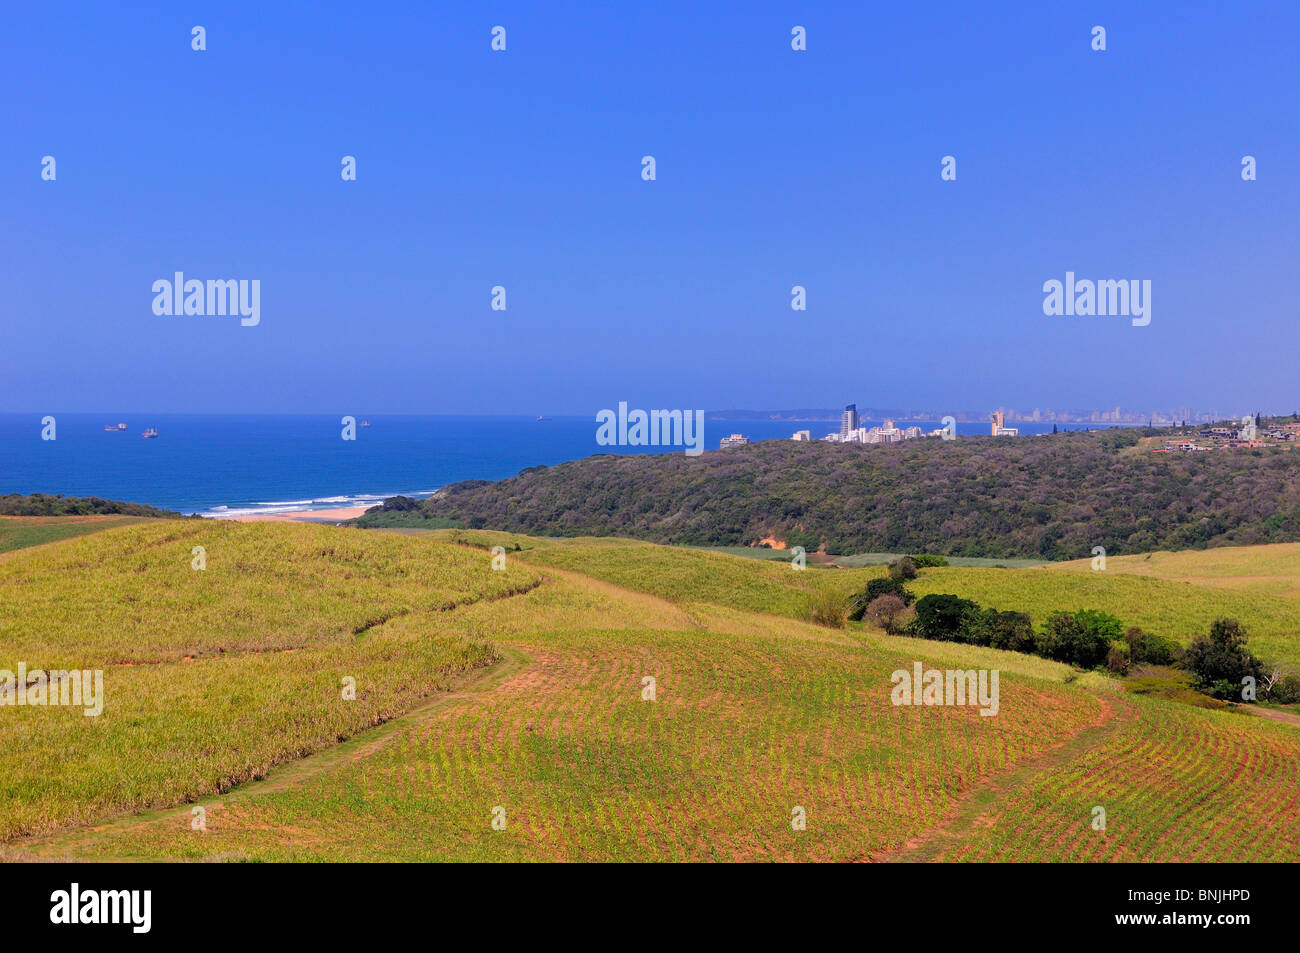 Blick auf Durban Stadt Felder in der Nähe von Umhlanga Kwazulu Natal in Südafrika Stadt Meer Ozeanküste Landschaft Landschaft Stockfoto